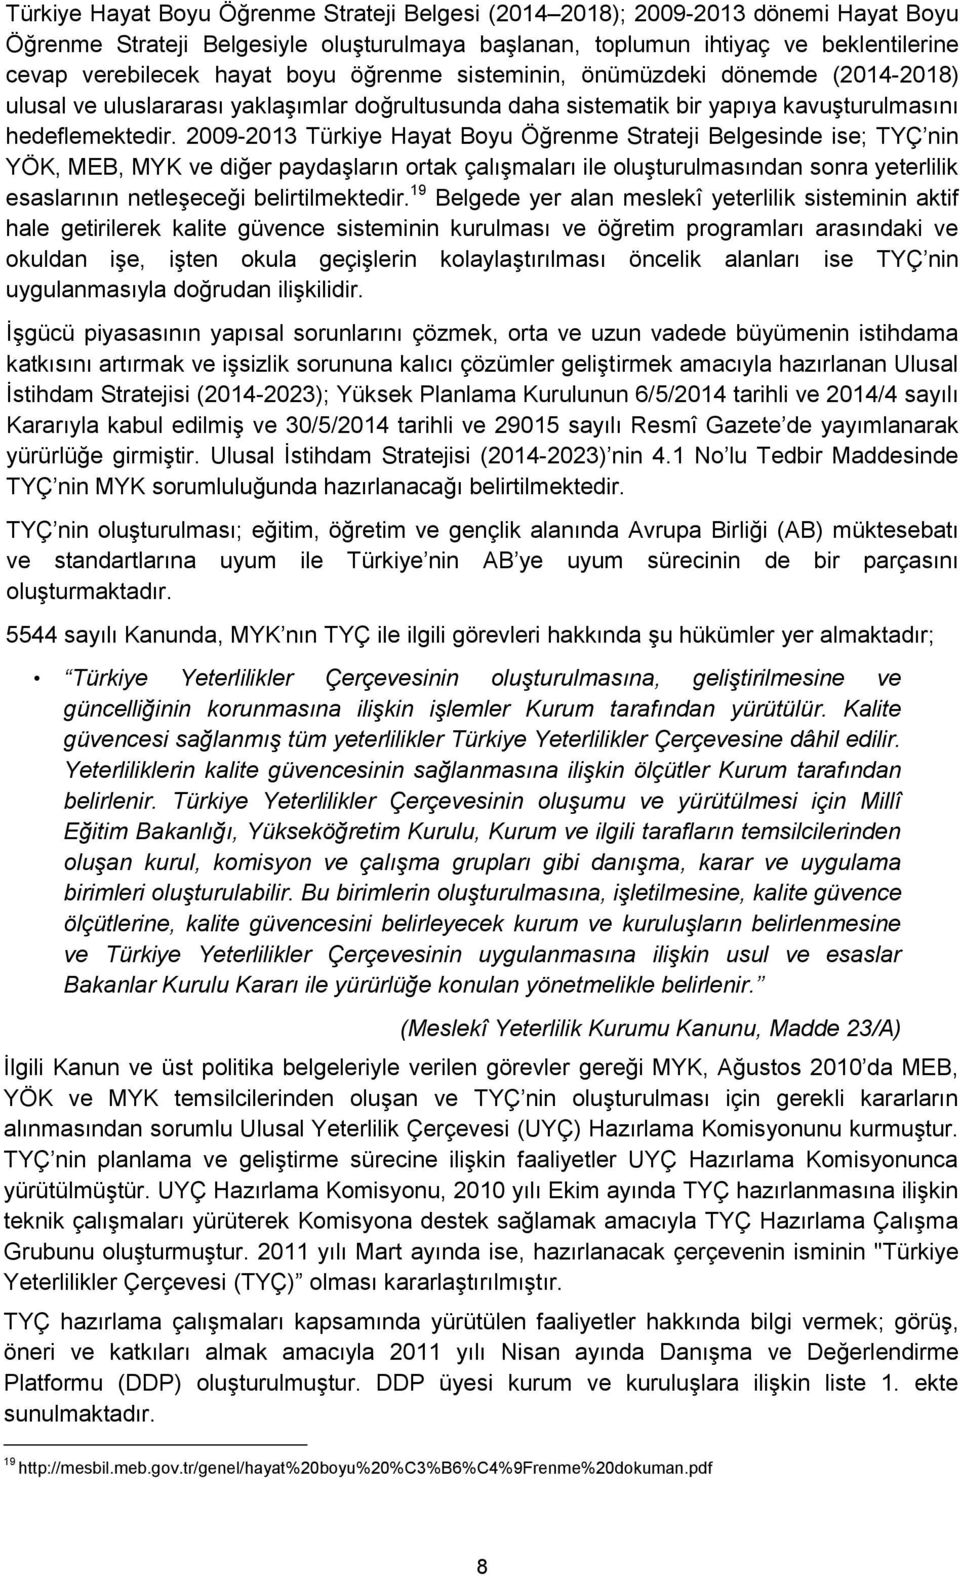 2009-2013 Türkiye Hayat Boyu Öğrenme Strateji Belgesinde ise; TYÇ nin YÖK, MEB, MYK ve diğer paydaşların ortak çalışmaları ile oluşturulmasından sonra yeterlilik esaslarının netleşeceği